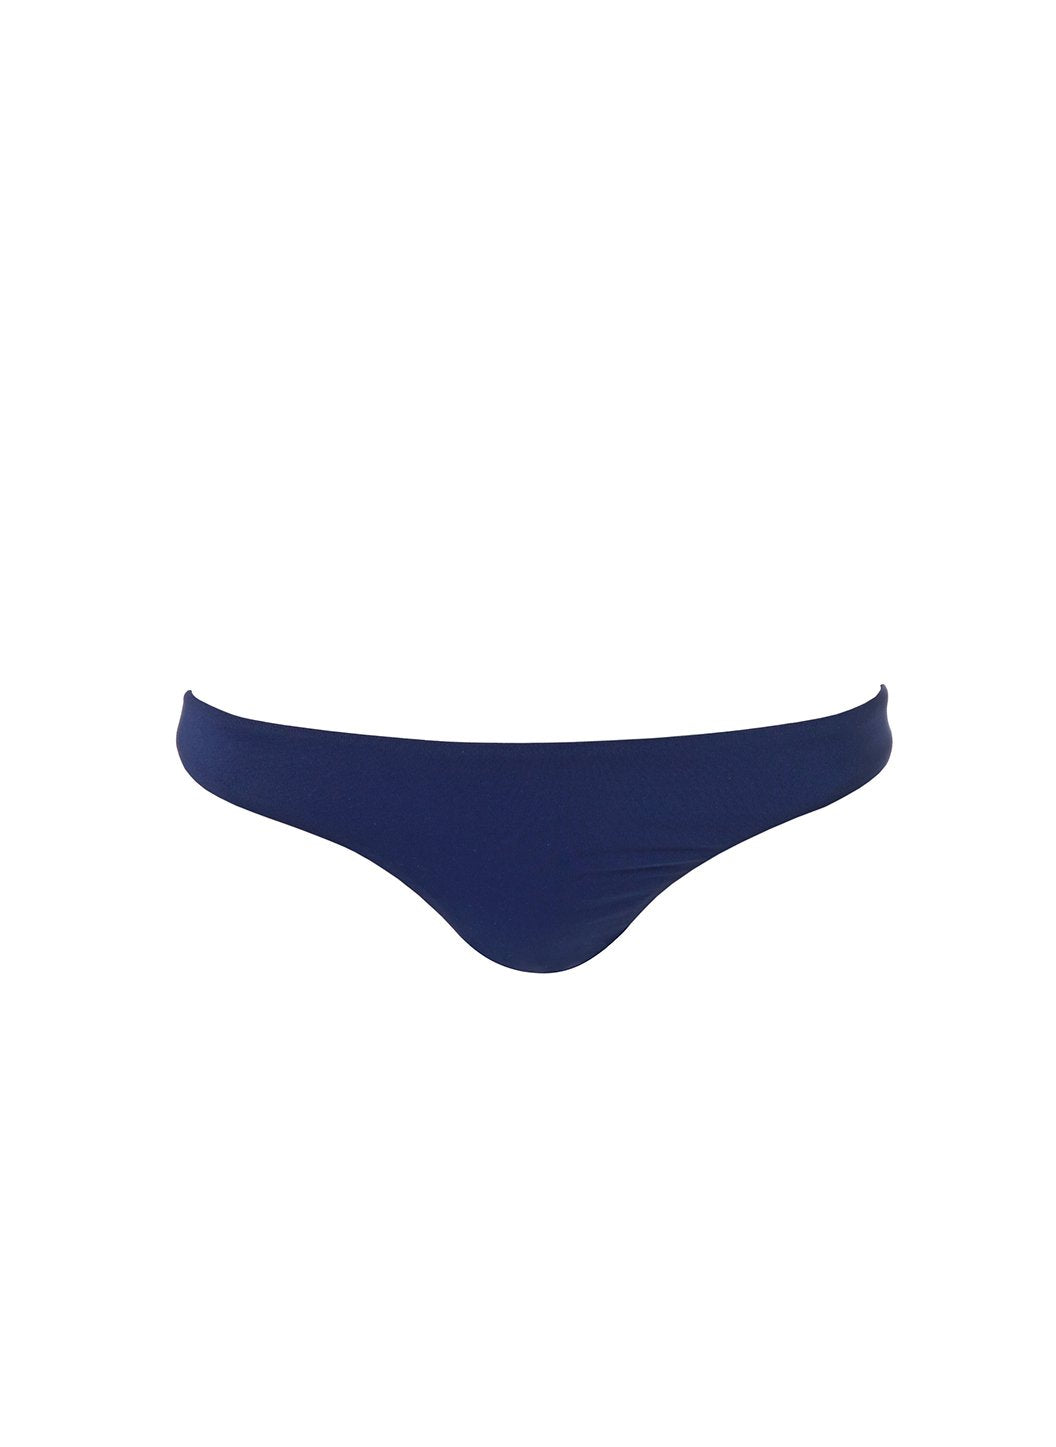 Barcelona Navy Bikini Bottom